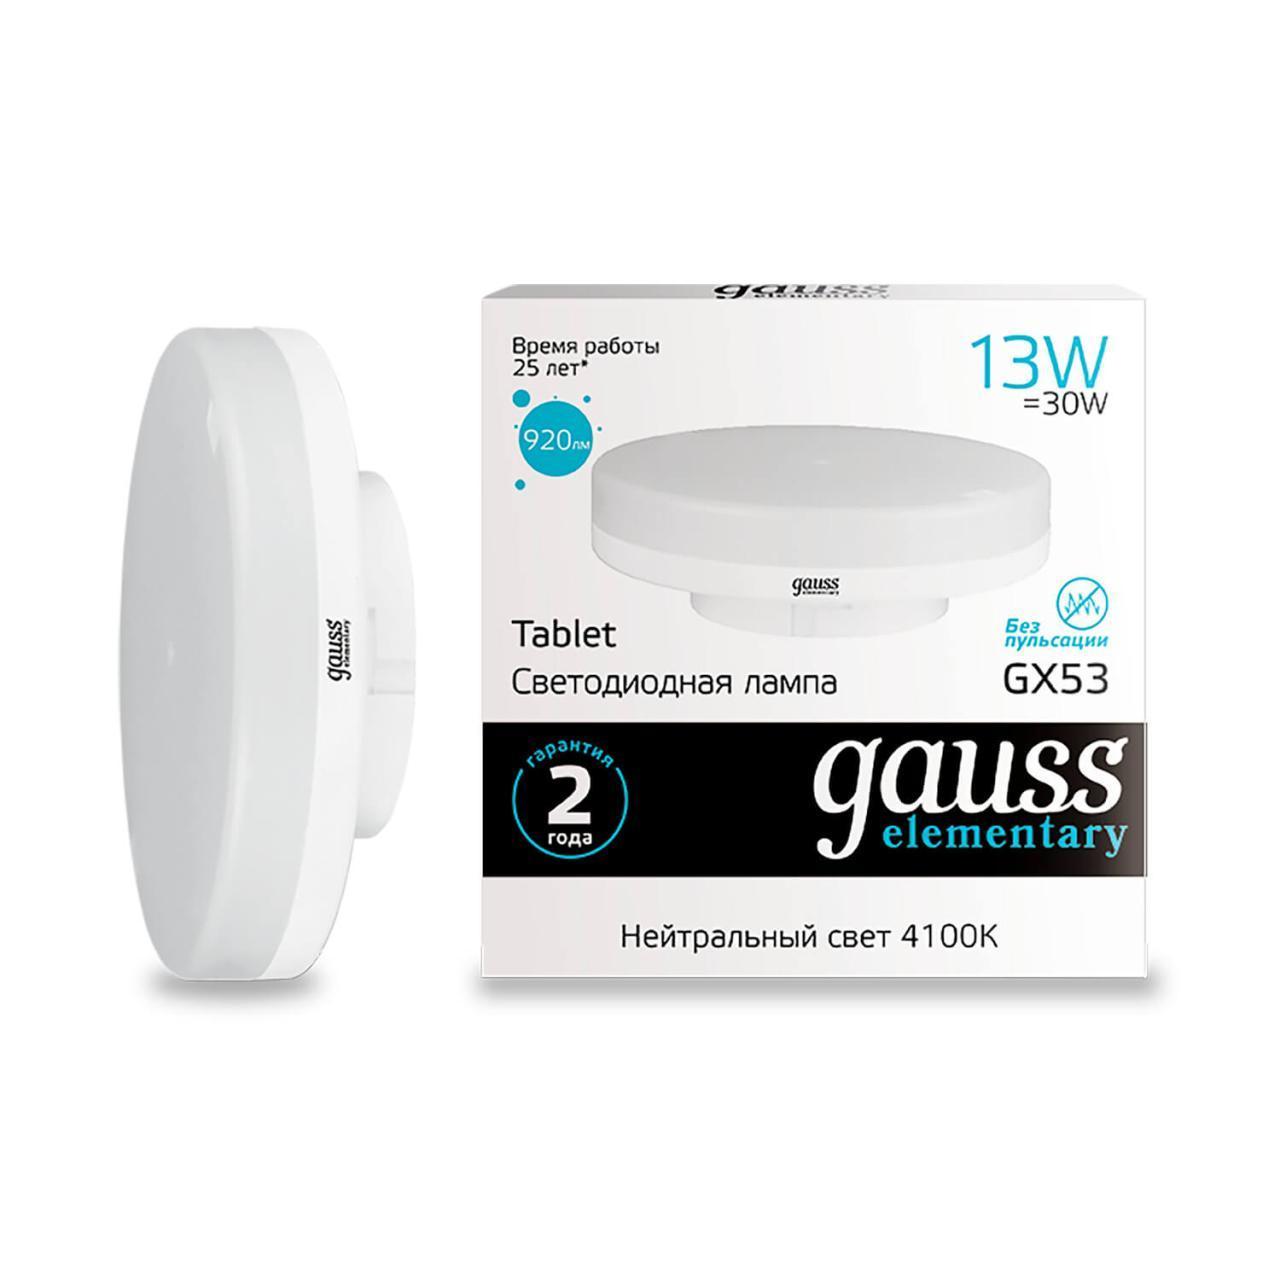   Gauss GX53 13W 4100K  83823